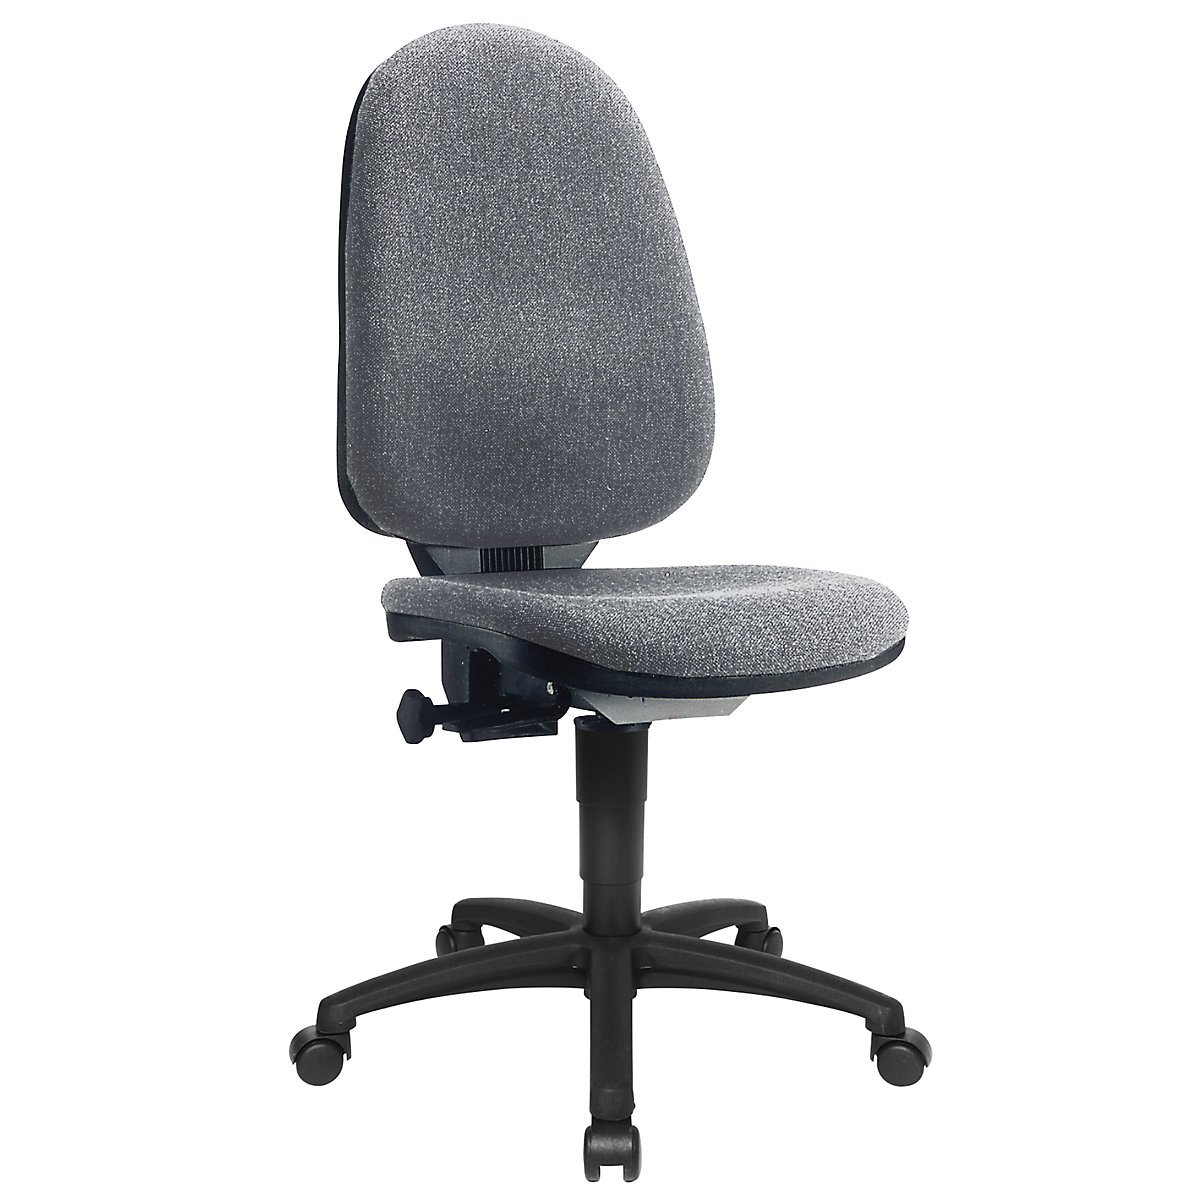 Standardní otočná židle – Topstar, bez područek, opěradlo 550 mm, podstavec černý, látka šedá-4